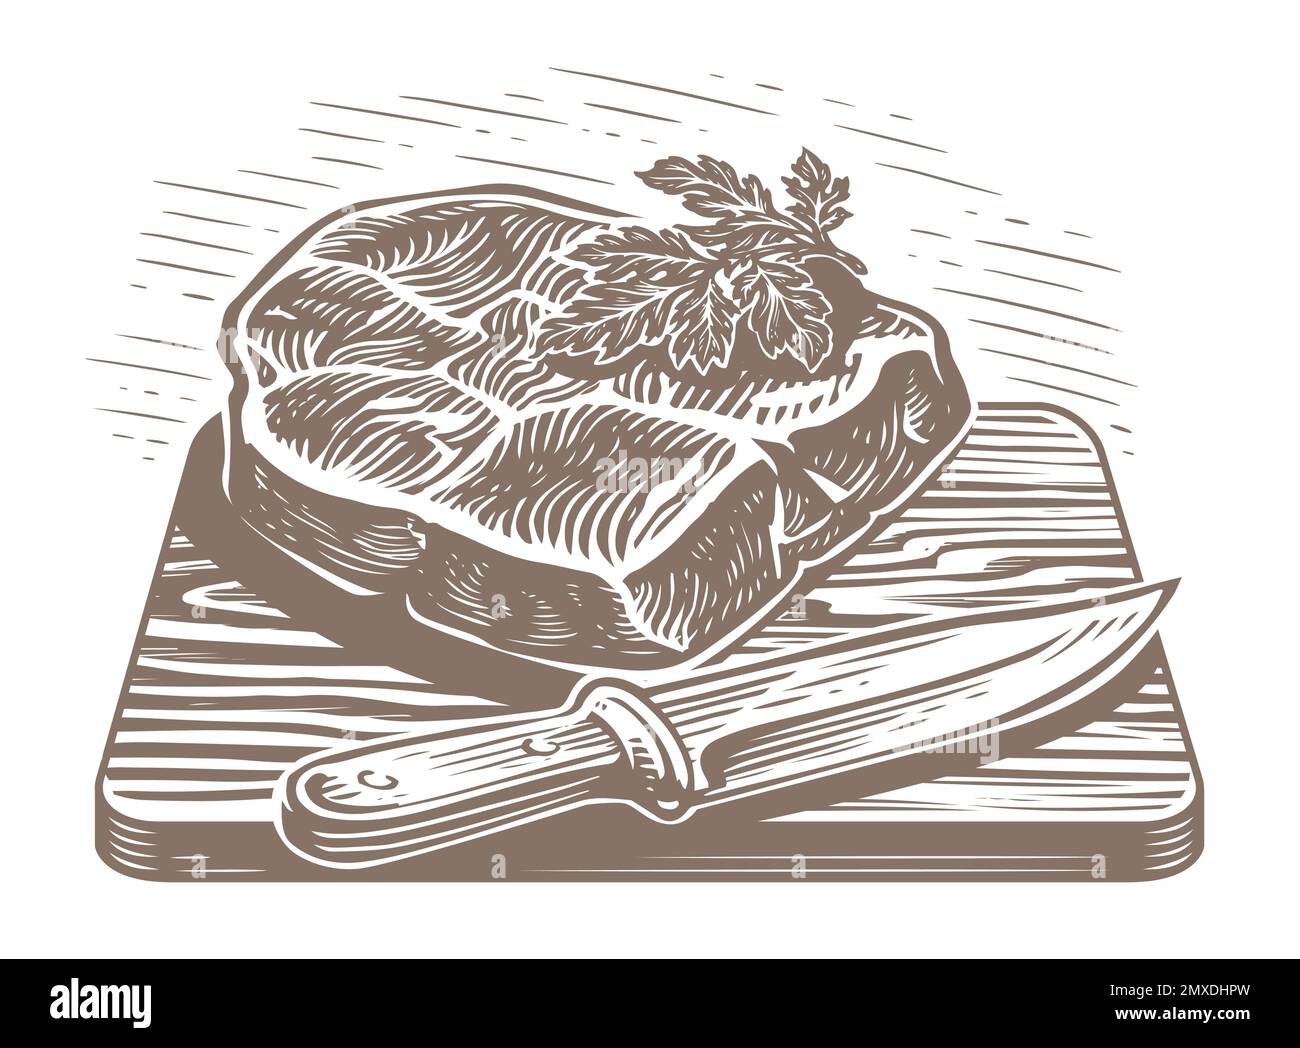 Handgezogenes gegrilltes Bullensteak auf Holzbrett mit Messer. Abbildung für Restaurantmenü oder Metzgerei Stock Vektor